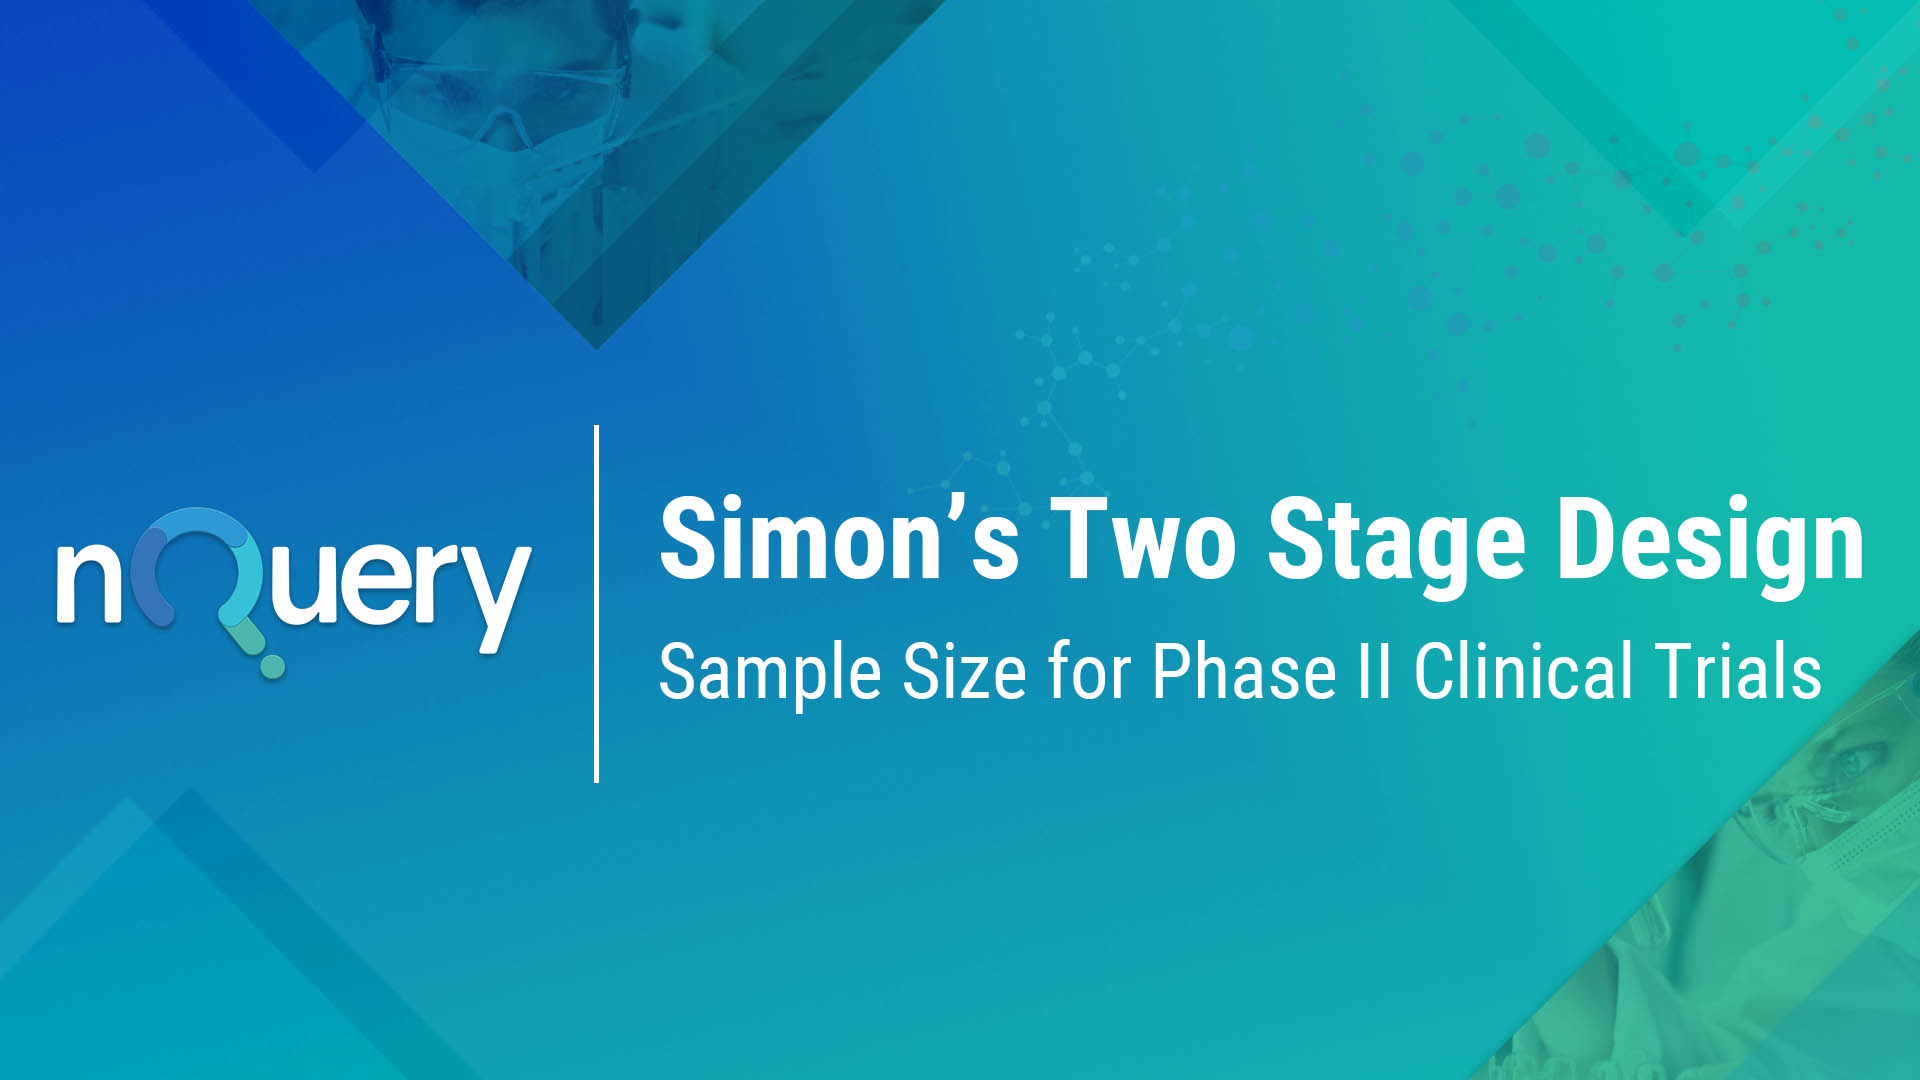 Simon's Two Stage Design